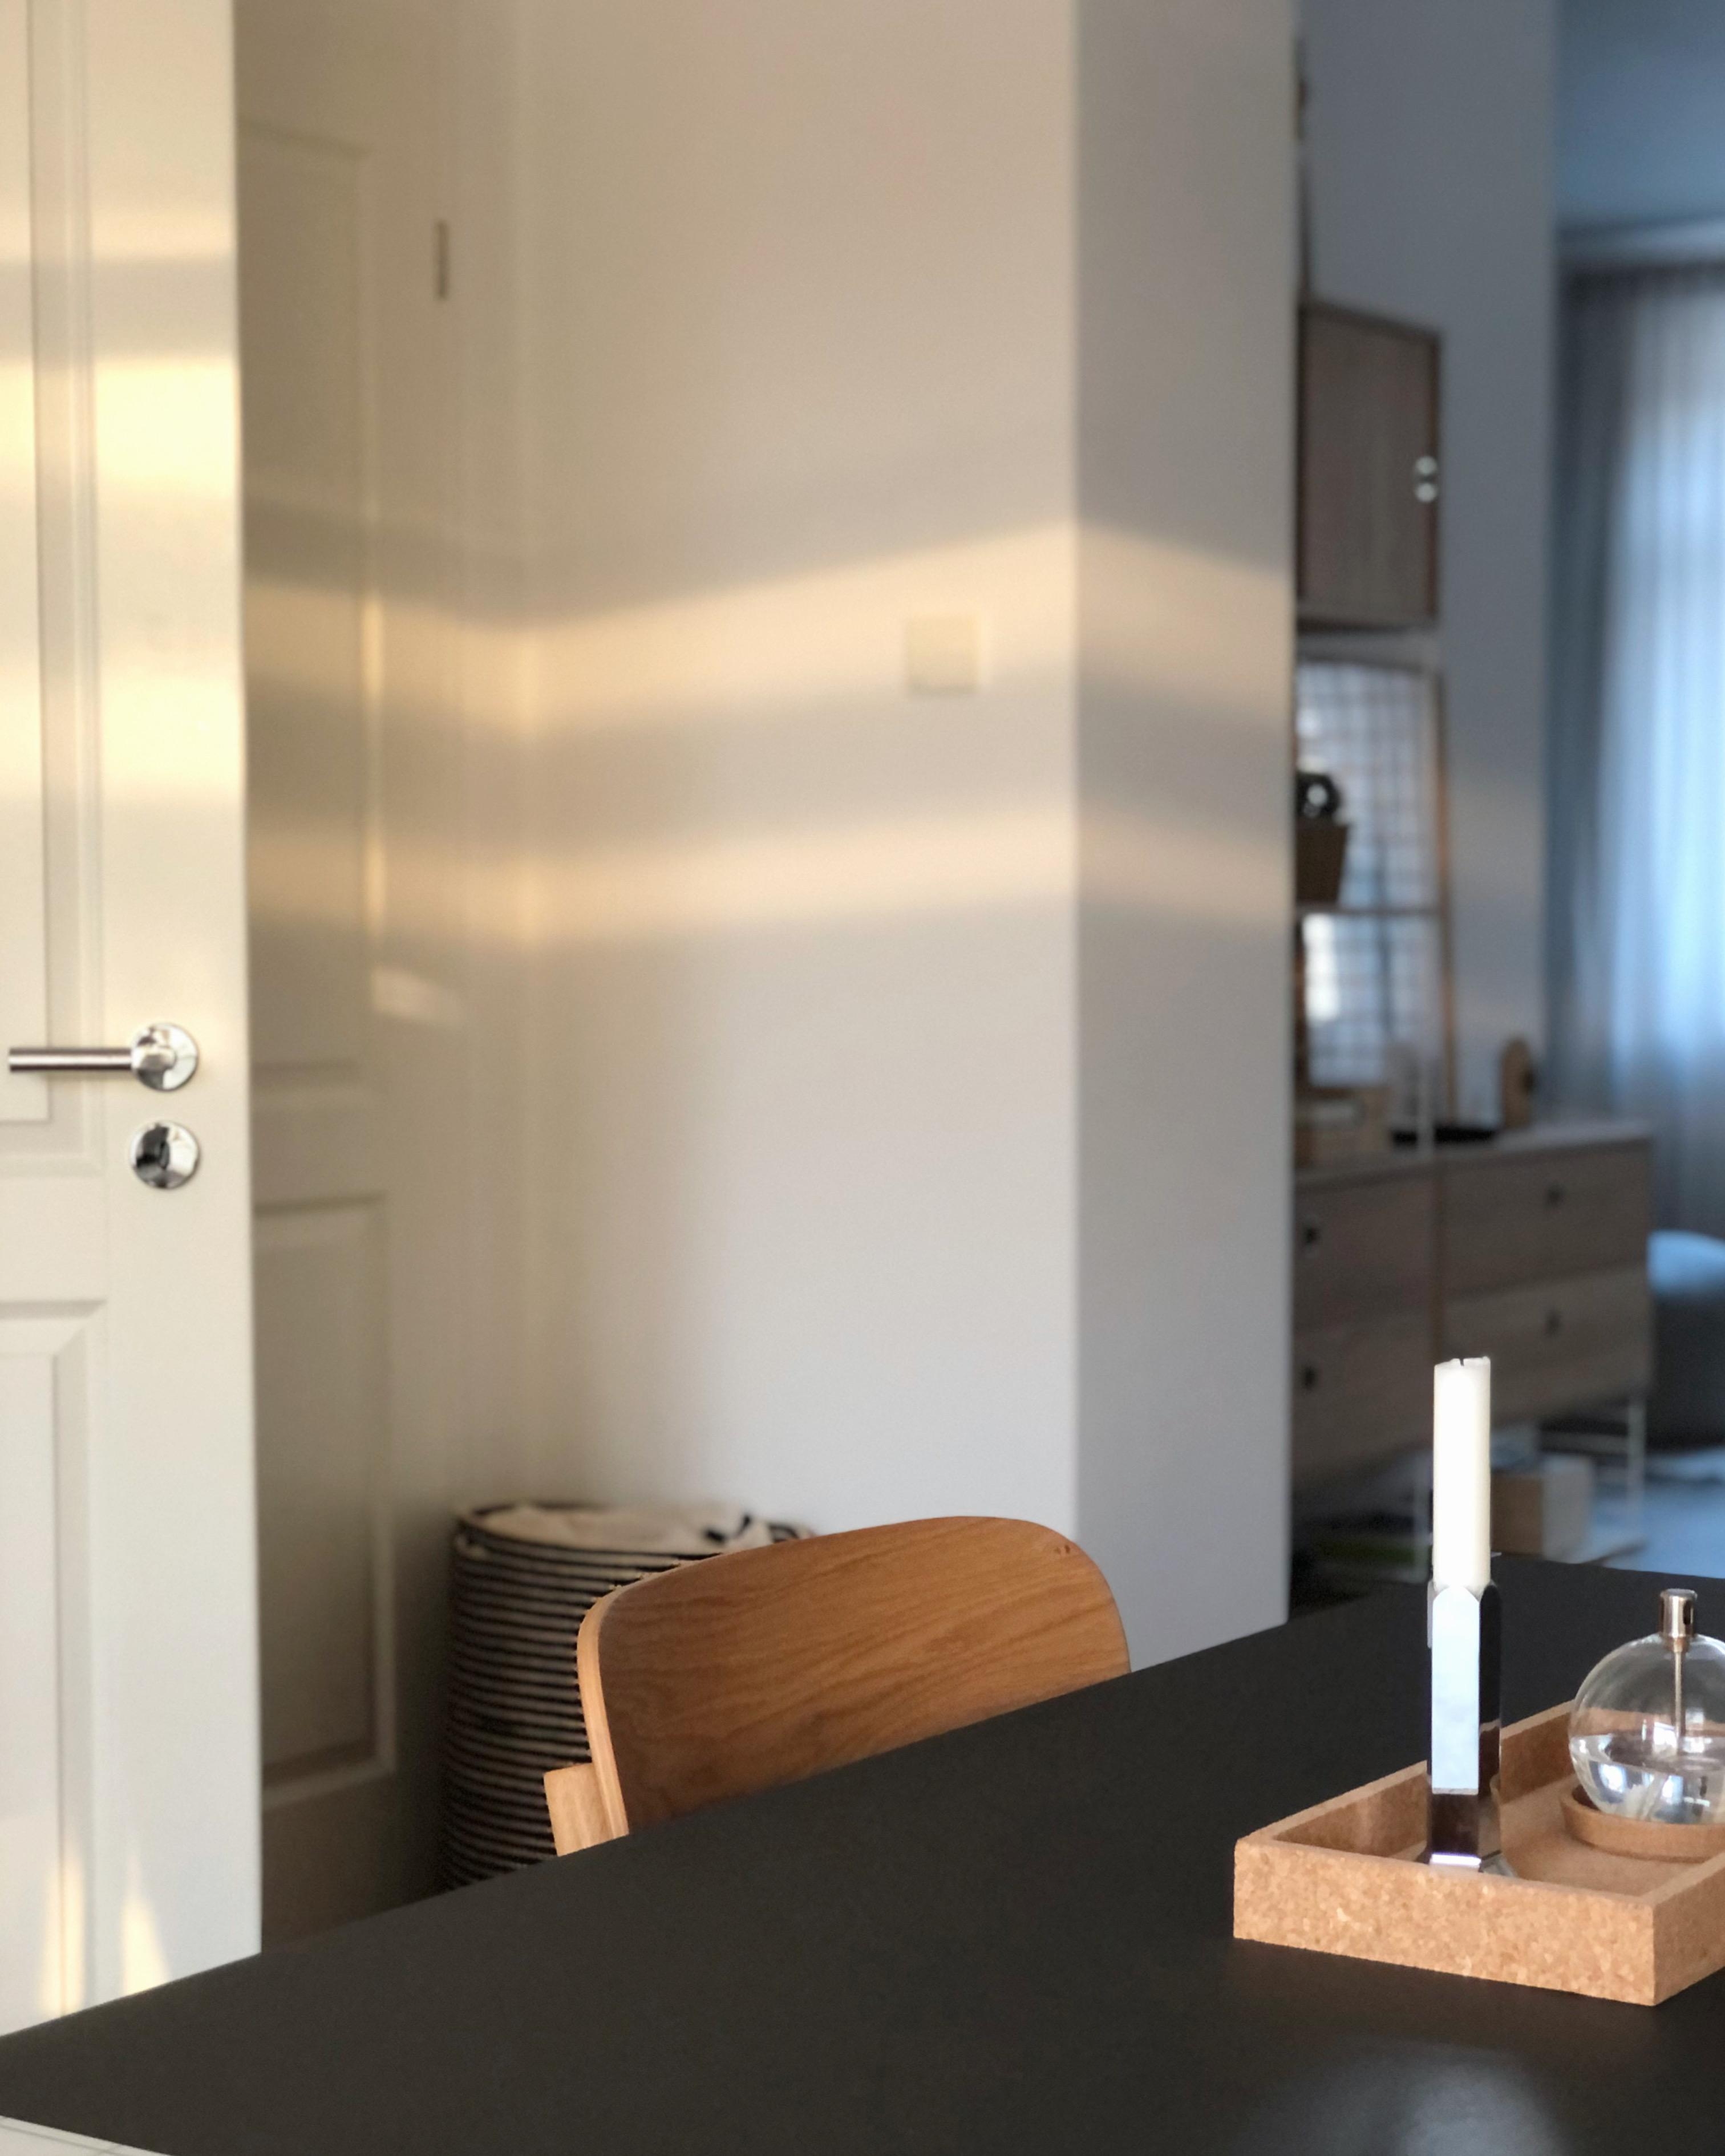 #küche #wohnzimmer #stringregal #tischdeko #esstisch #minimalistisch #skandinavisch #skandi #cozy #hygge #mood #interior